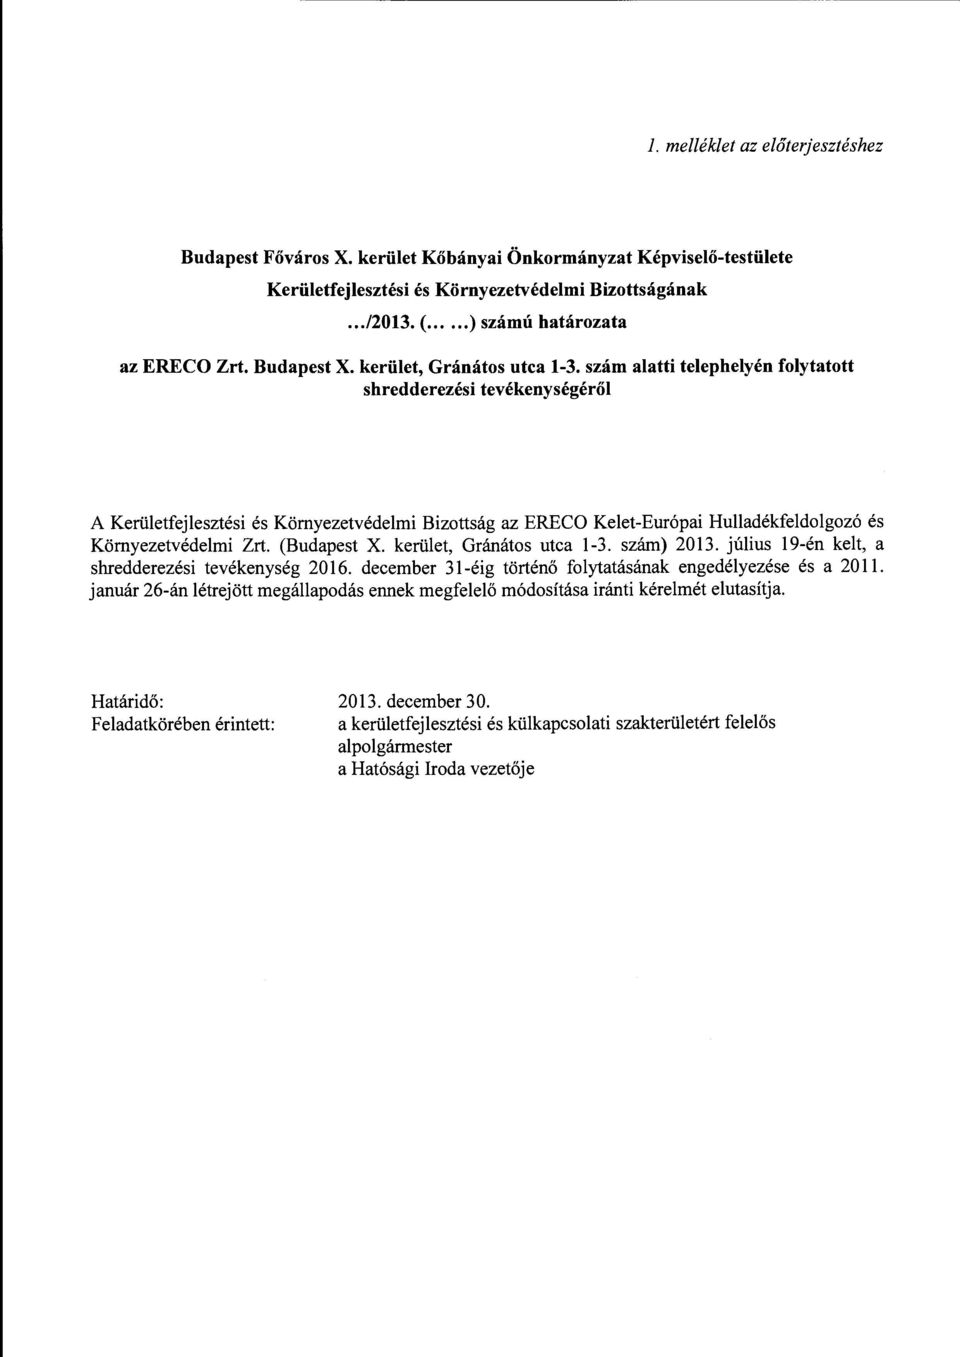 szám alatti telephelyén folytatott shredderezésitevékenységéről A Kerületfejlesztési és Környezetvédelmi Bizottság az ERECO Kelet-Európai Hulladékfeldolgozó és Környezetvédelmi Zrt. ( szám) 2013.